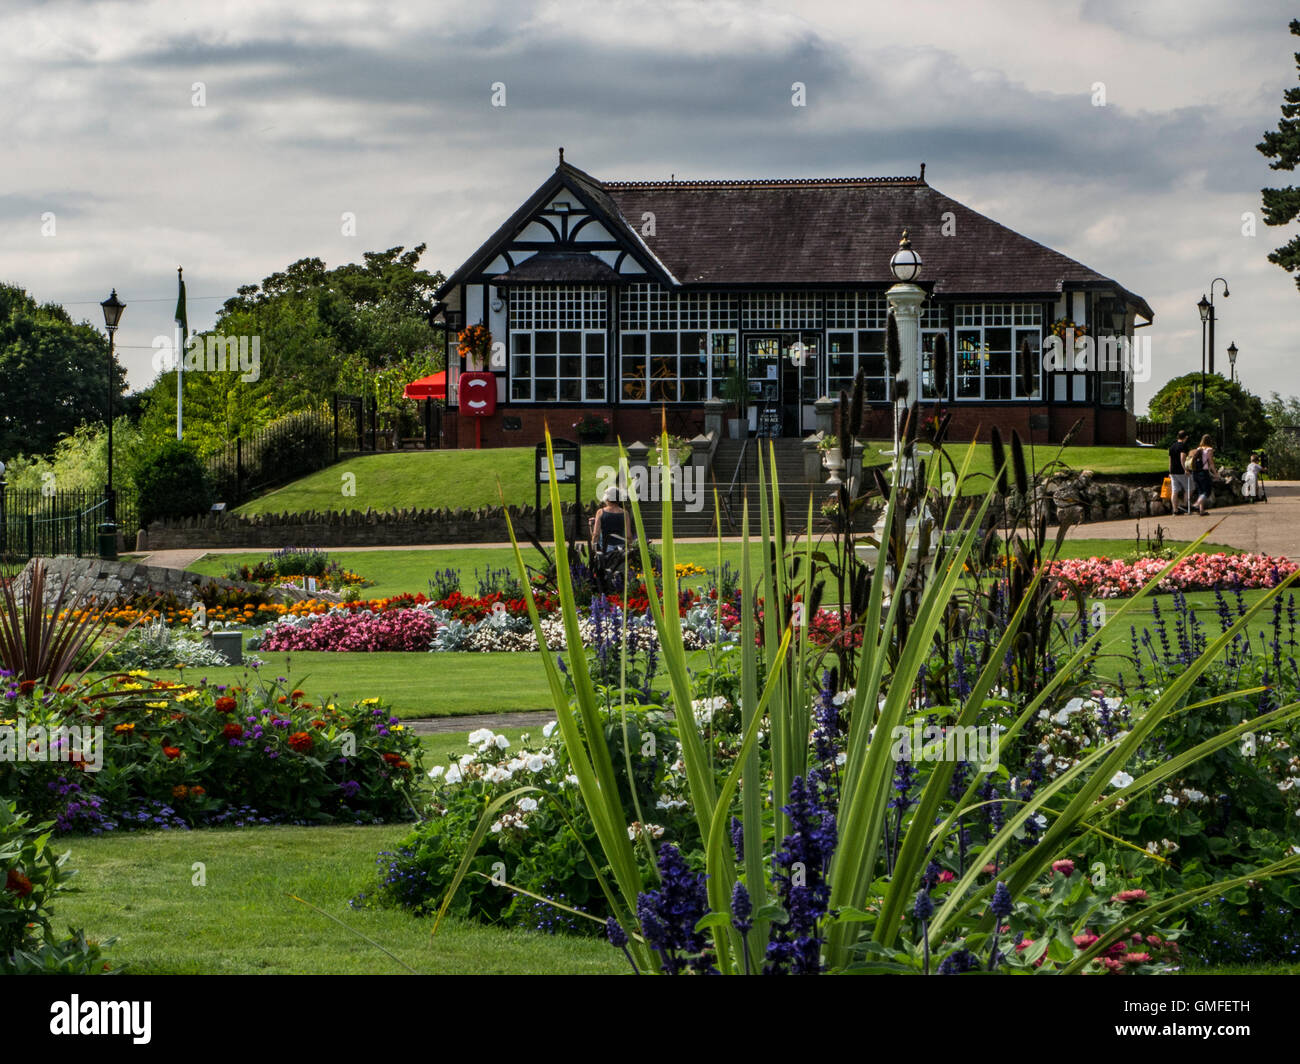 Congleton Park et pavilion, Crewe, Cheshire, England, UK Banque D'Images